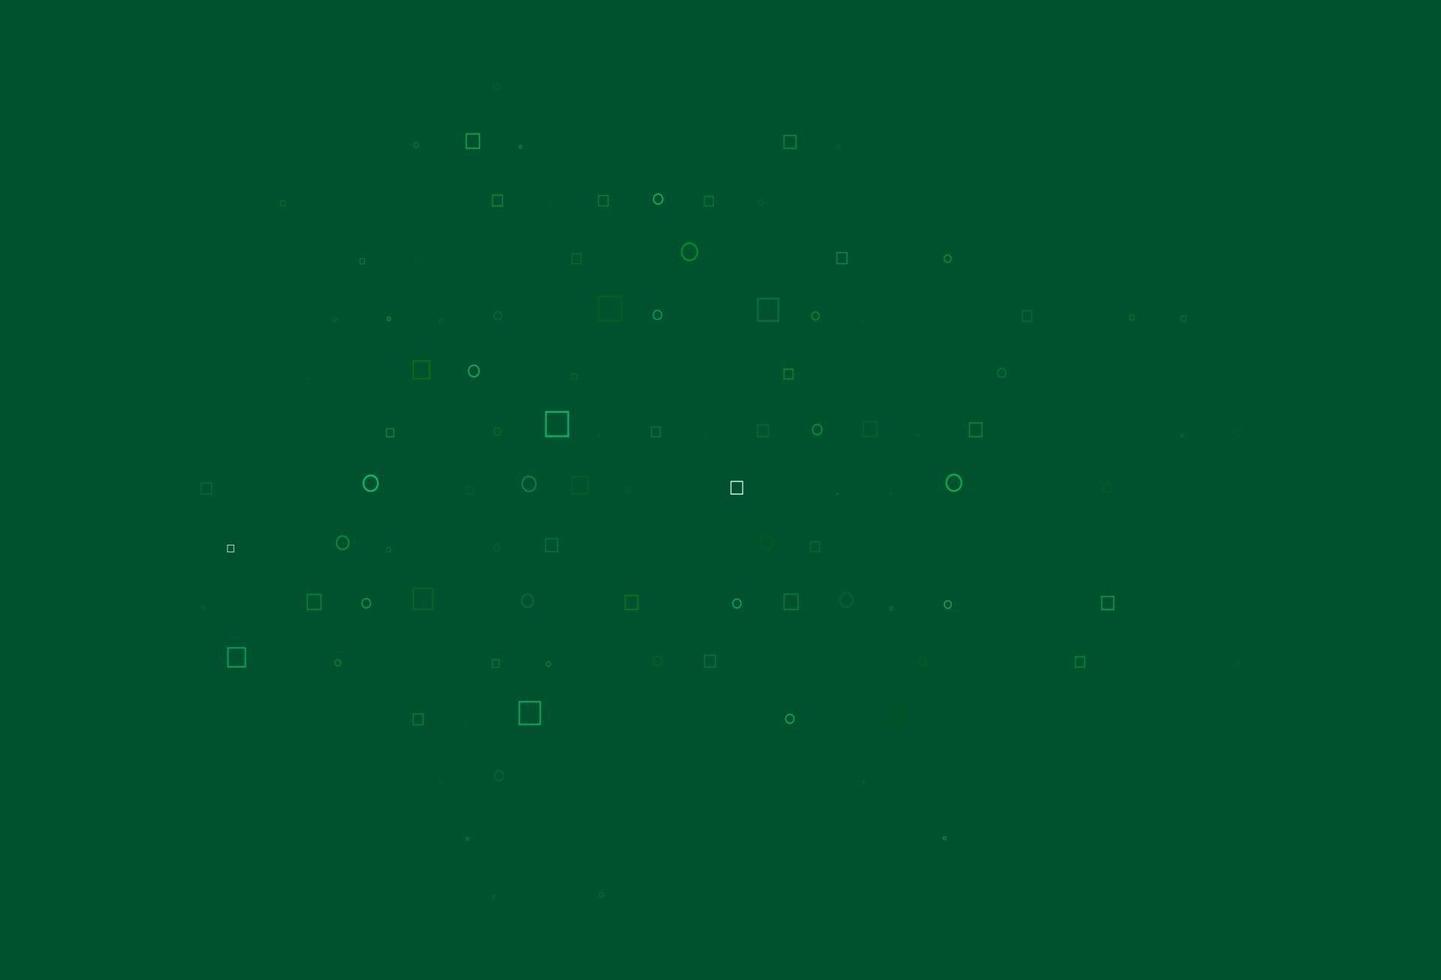 padrão de vetor azul, verde claro com esferas, quadrados.